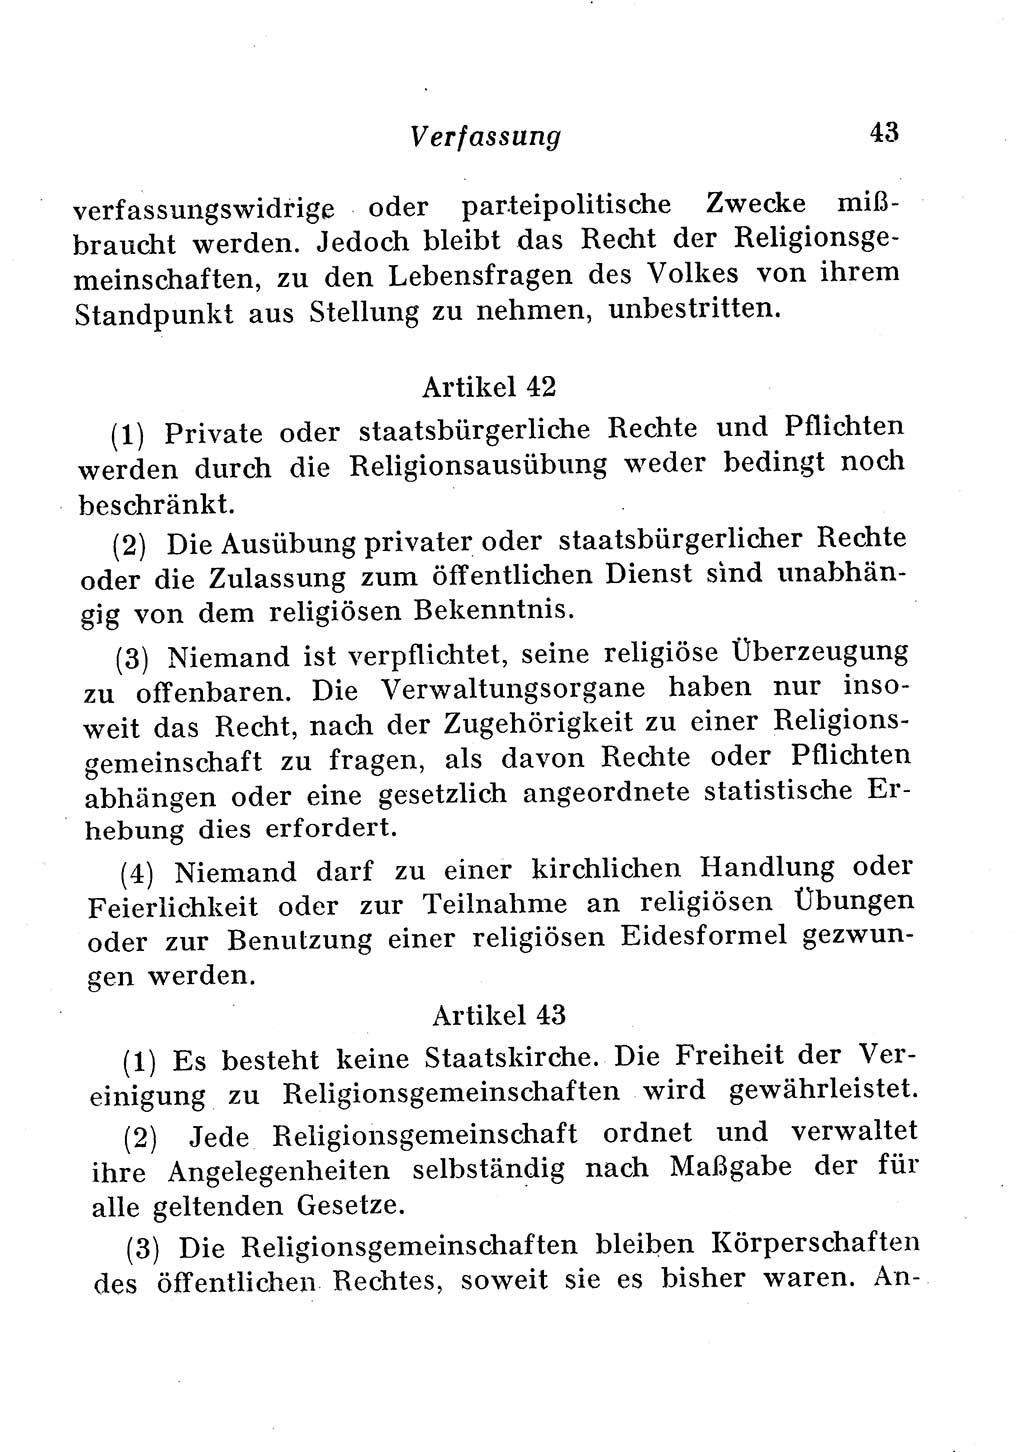 Staats- und verwaltungsrechtliche Gesetze der Deutschen Demokratischen Republik (DDR) 1958, Seite 43 (StVerwR Ges. DDR 1958, S. 43)